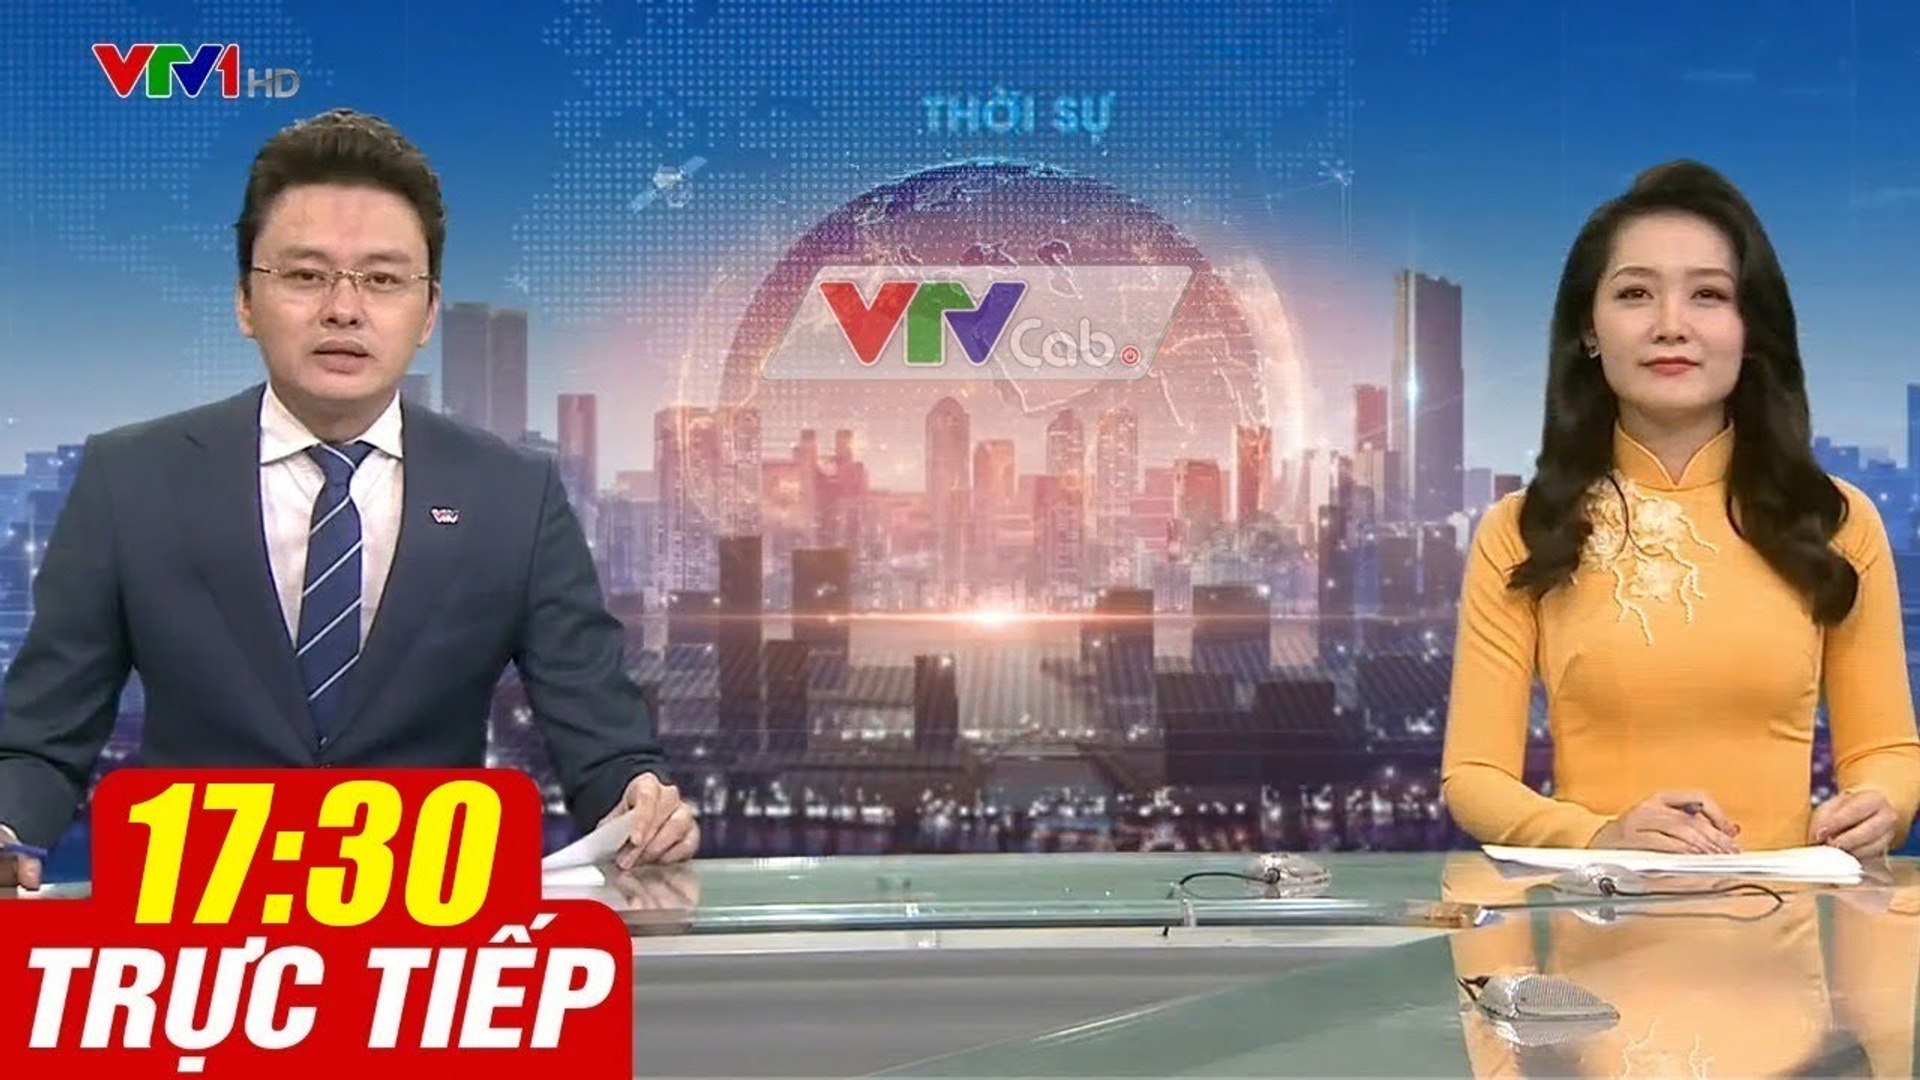 Trực Tiếp VIỆT NAM HÔM NAY 17h30 ngày 16.09.2020  Tin tức thời sự VTV1 mới nhất hôm nay